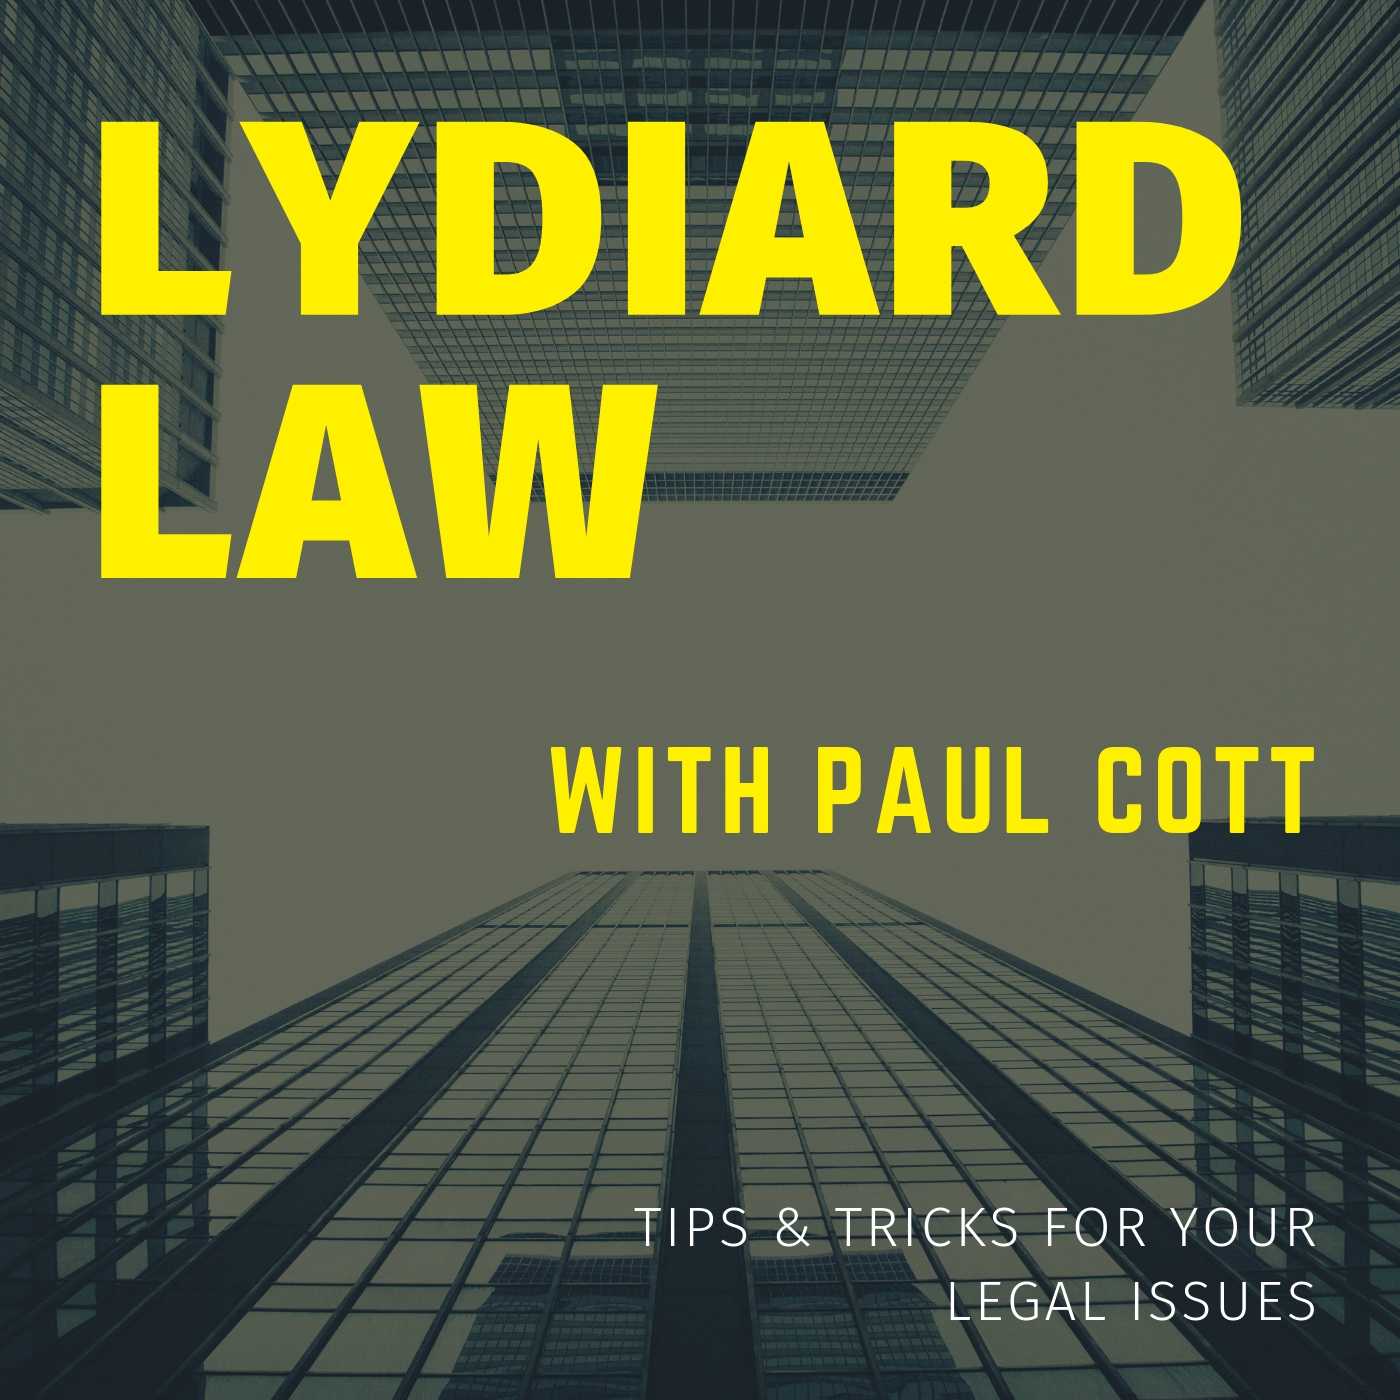 Paul Cott’s journey in law